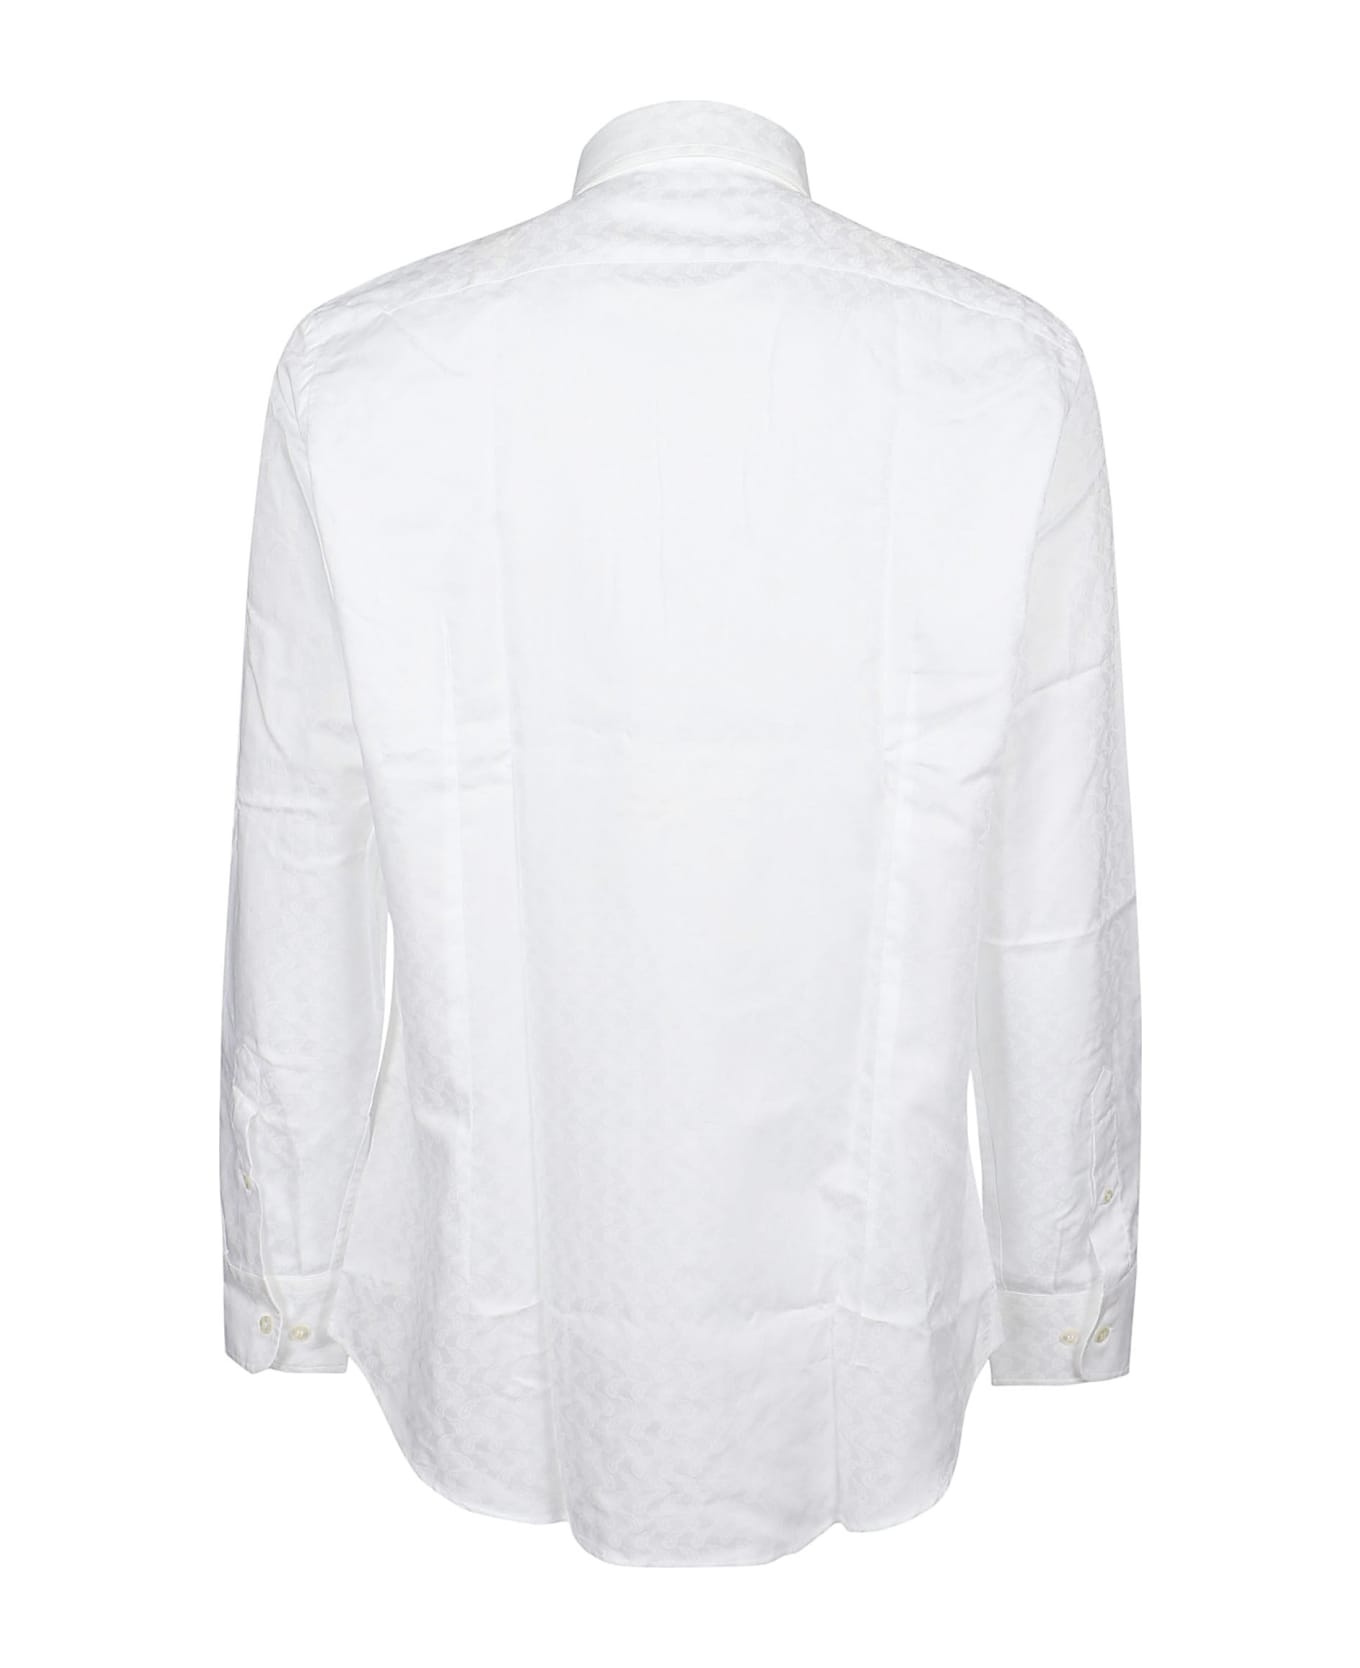 Etro Roma Long Sleeve Shirt - Bianco